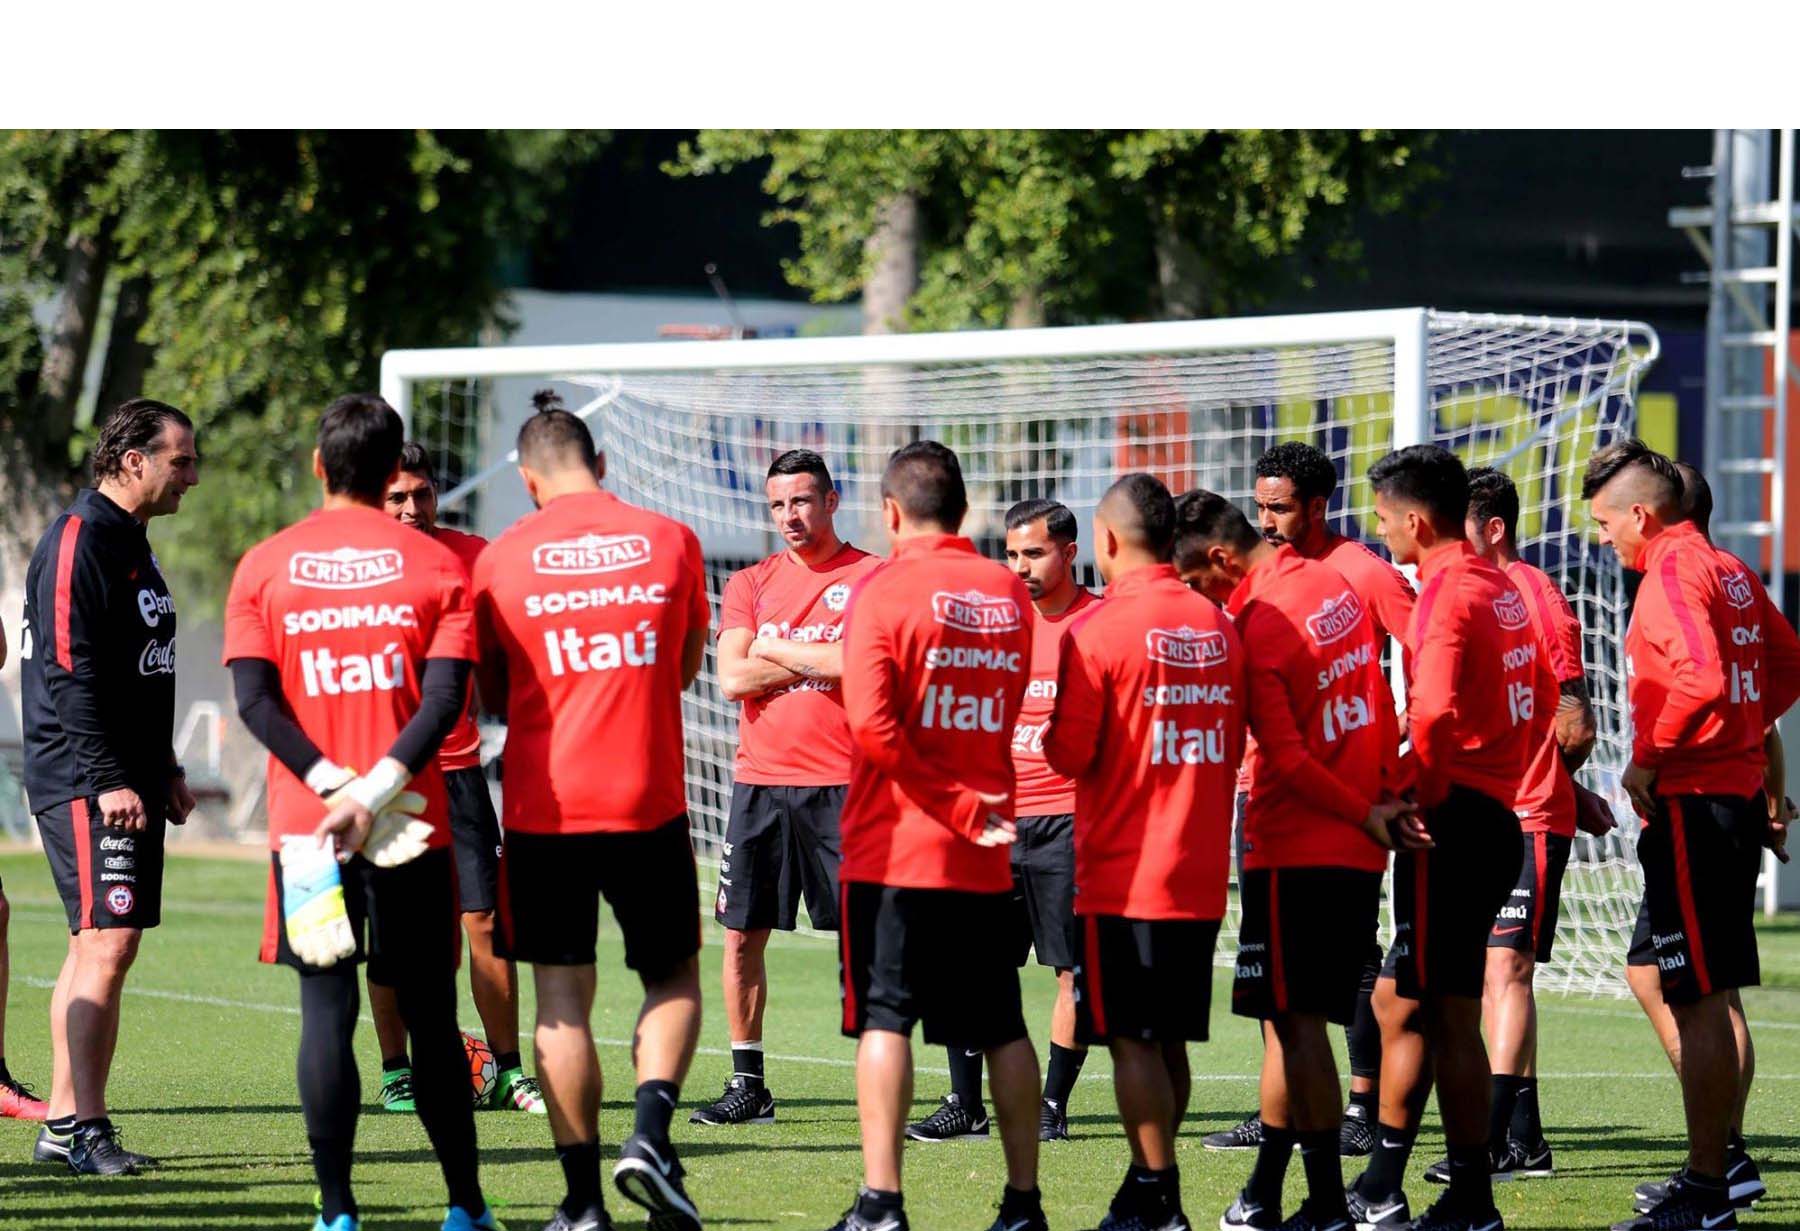 Los jugadores chilenos agrupados en el Sifup exigen más puestos de ascenso y descenso junto con el pago de los sueldos adeudados